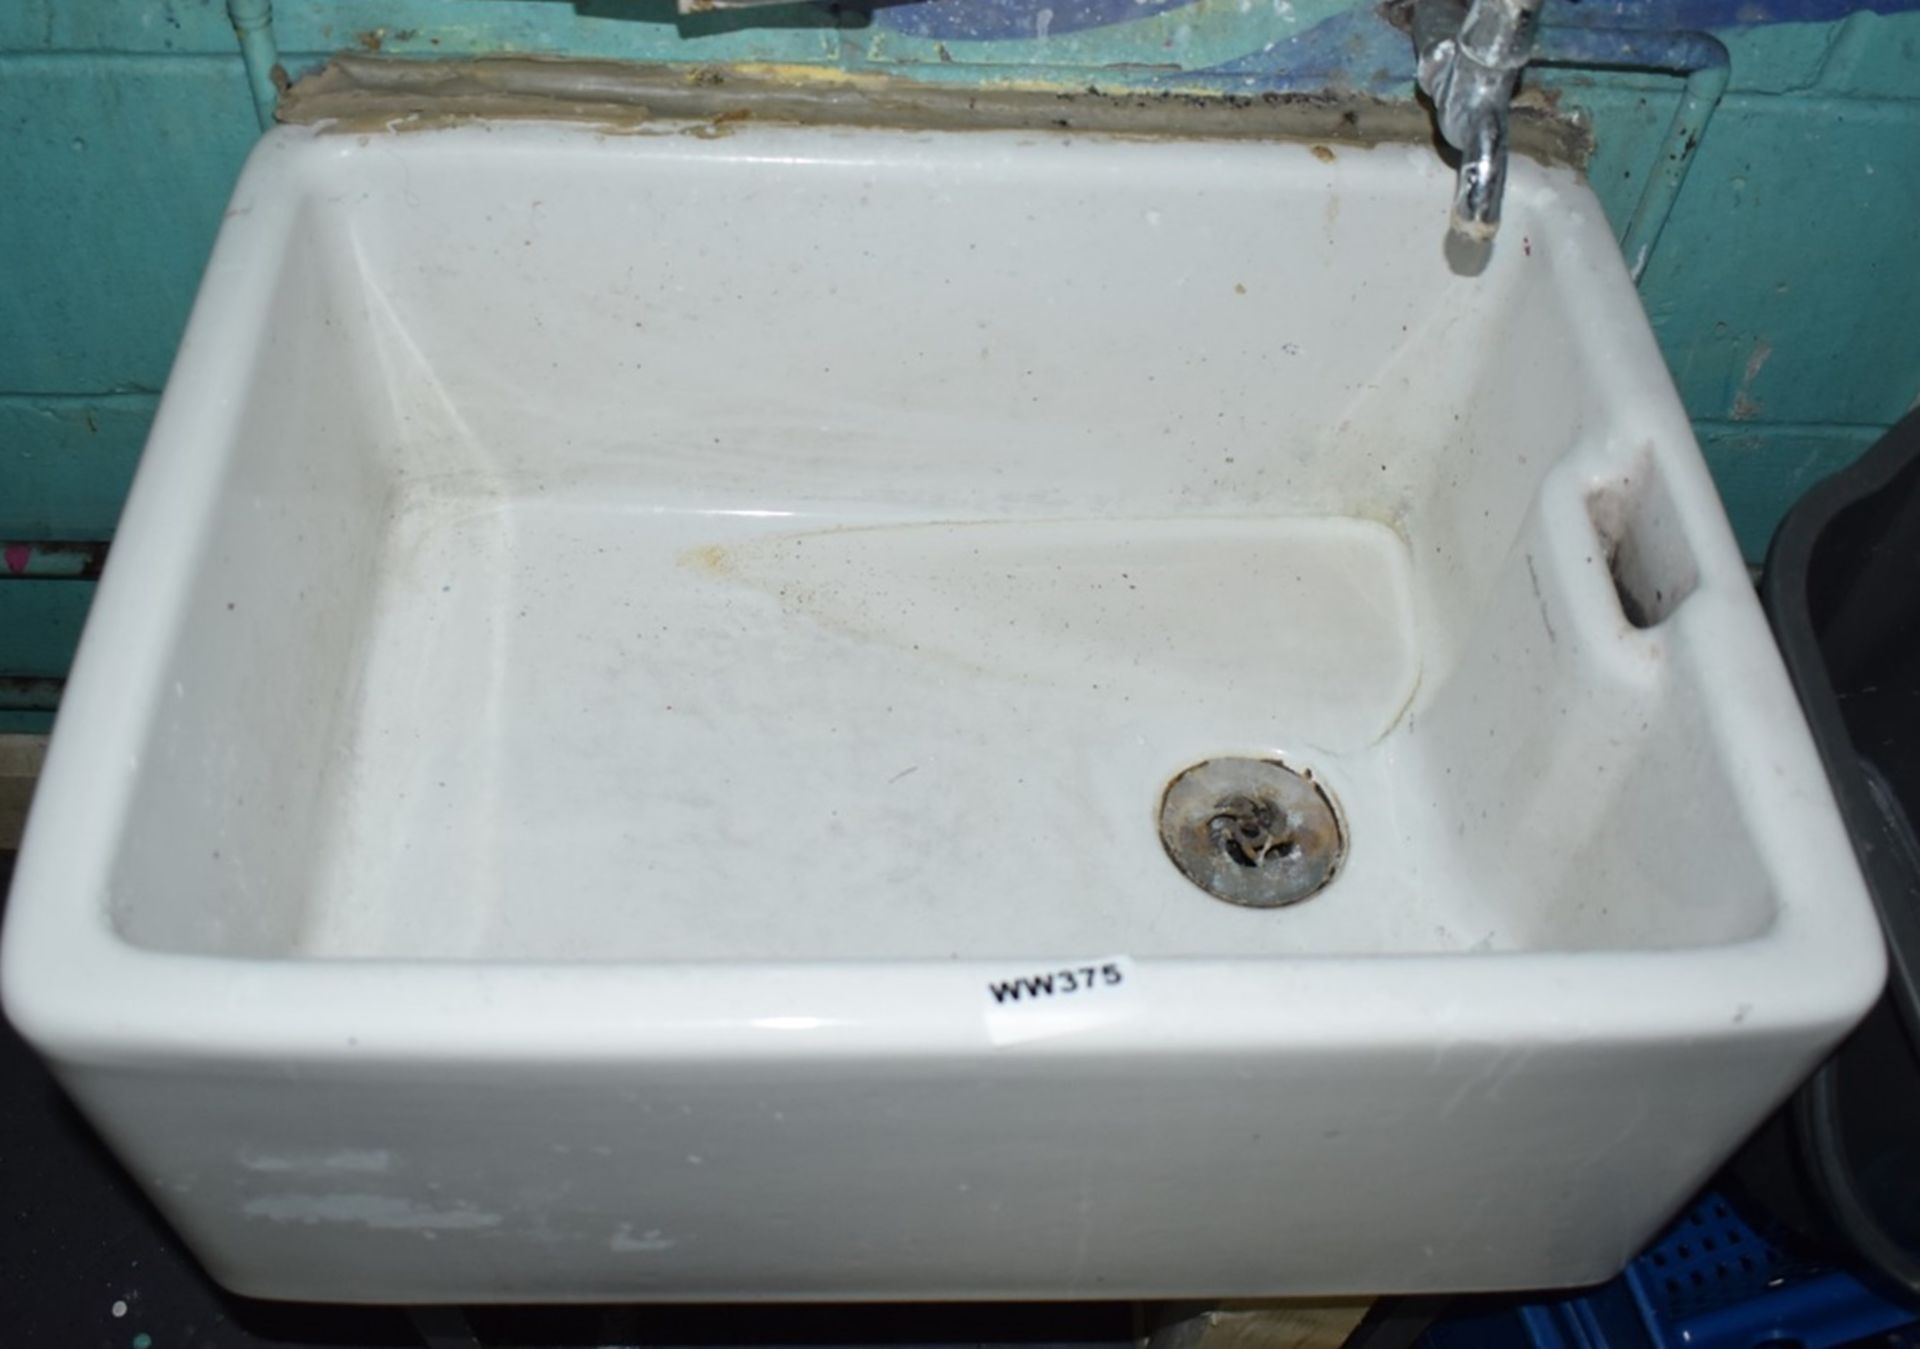 1 x Armitage Shanks Belfast Ceramic Sink Basin - H26 x W62 x D46 cms - Ref WW375 U - CL520 - - Image 4 of 4